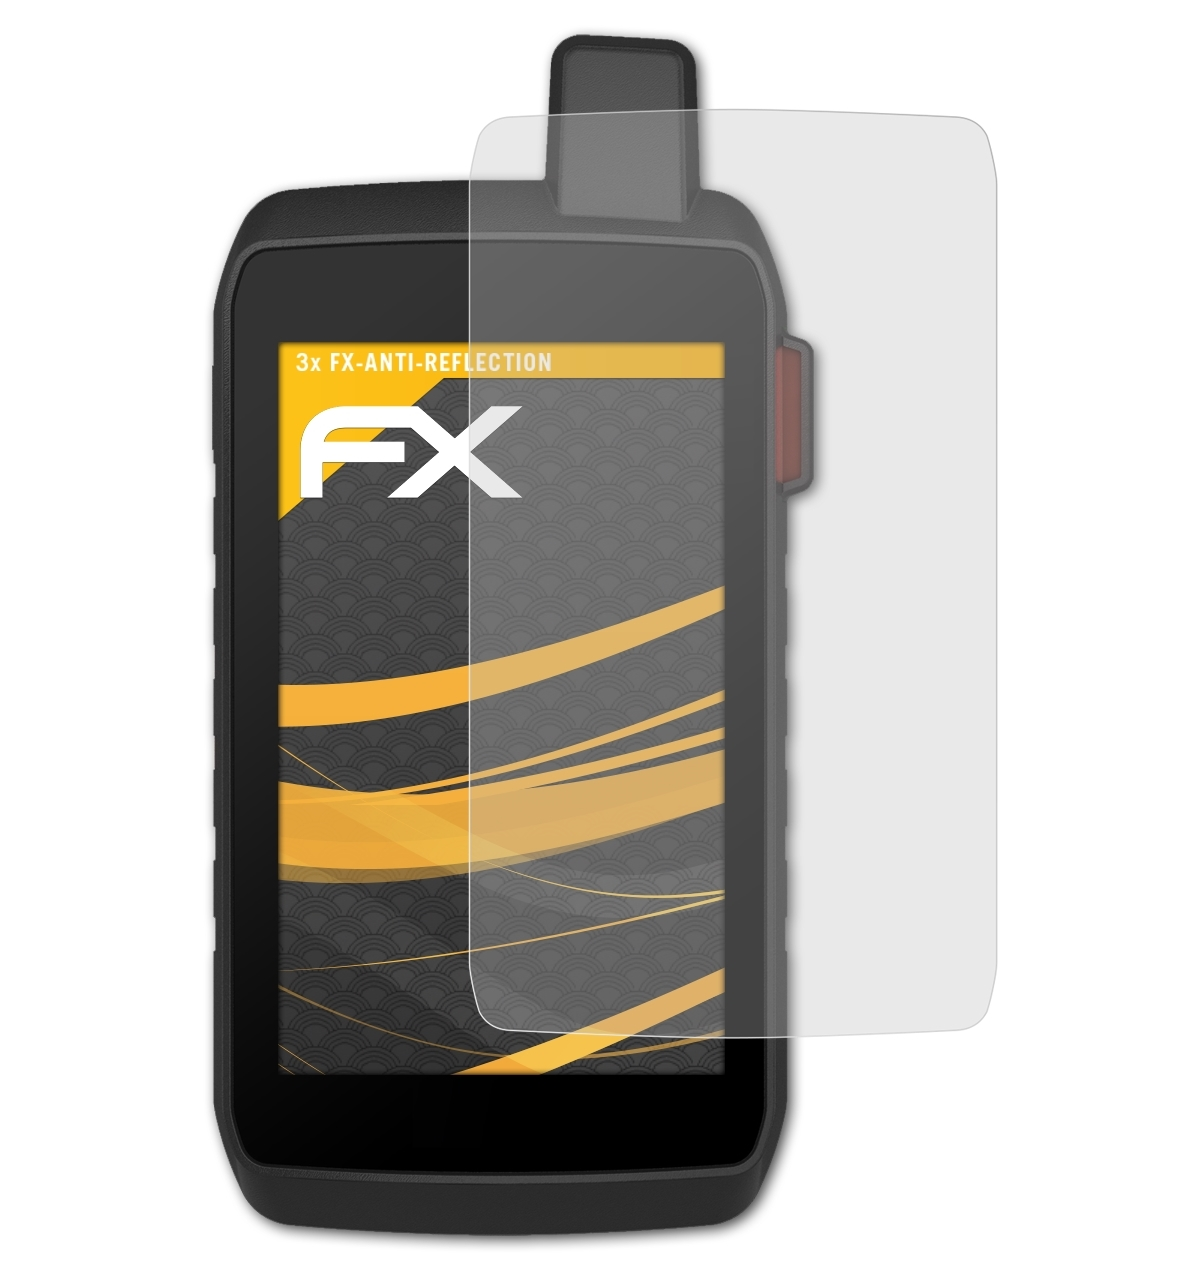 ATFOLIX 3x FX-Antireflex Displayschutz(für 750i) Montana Garmin